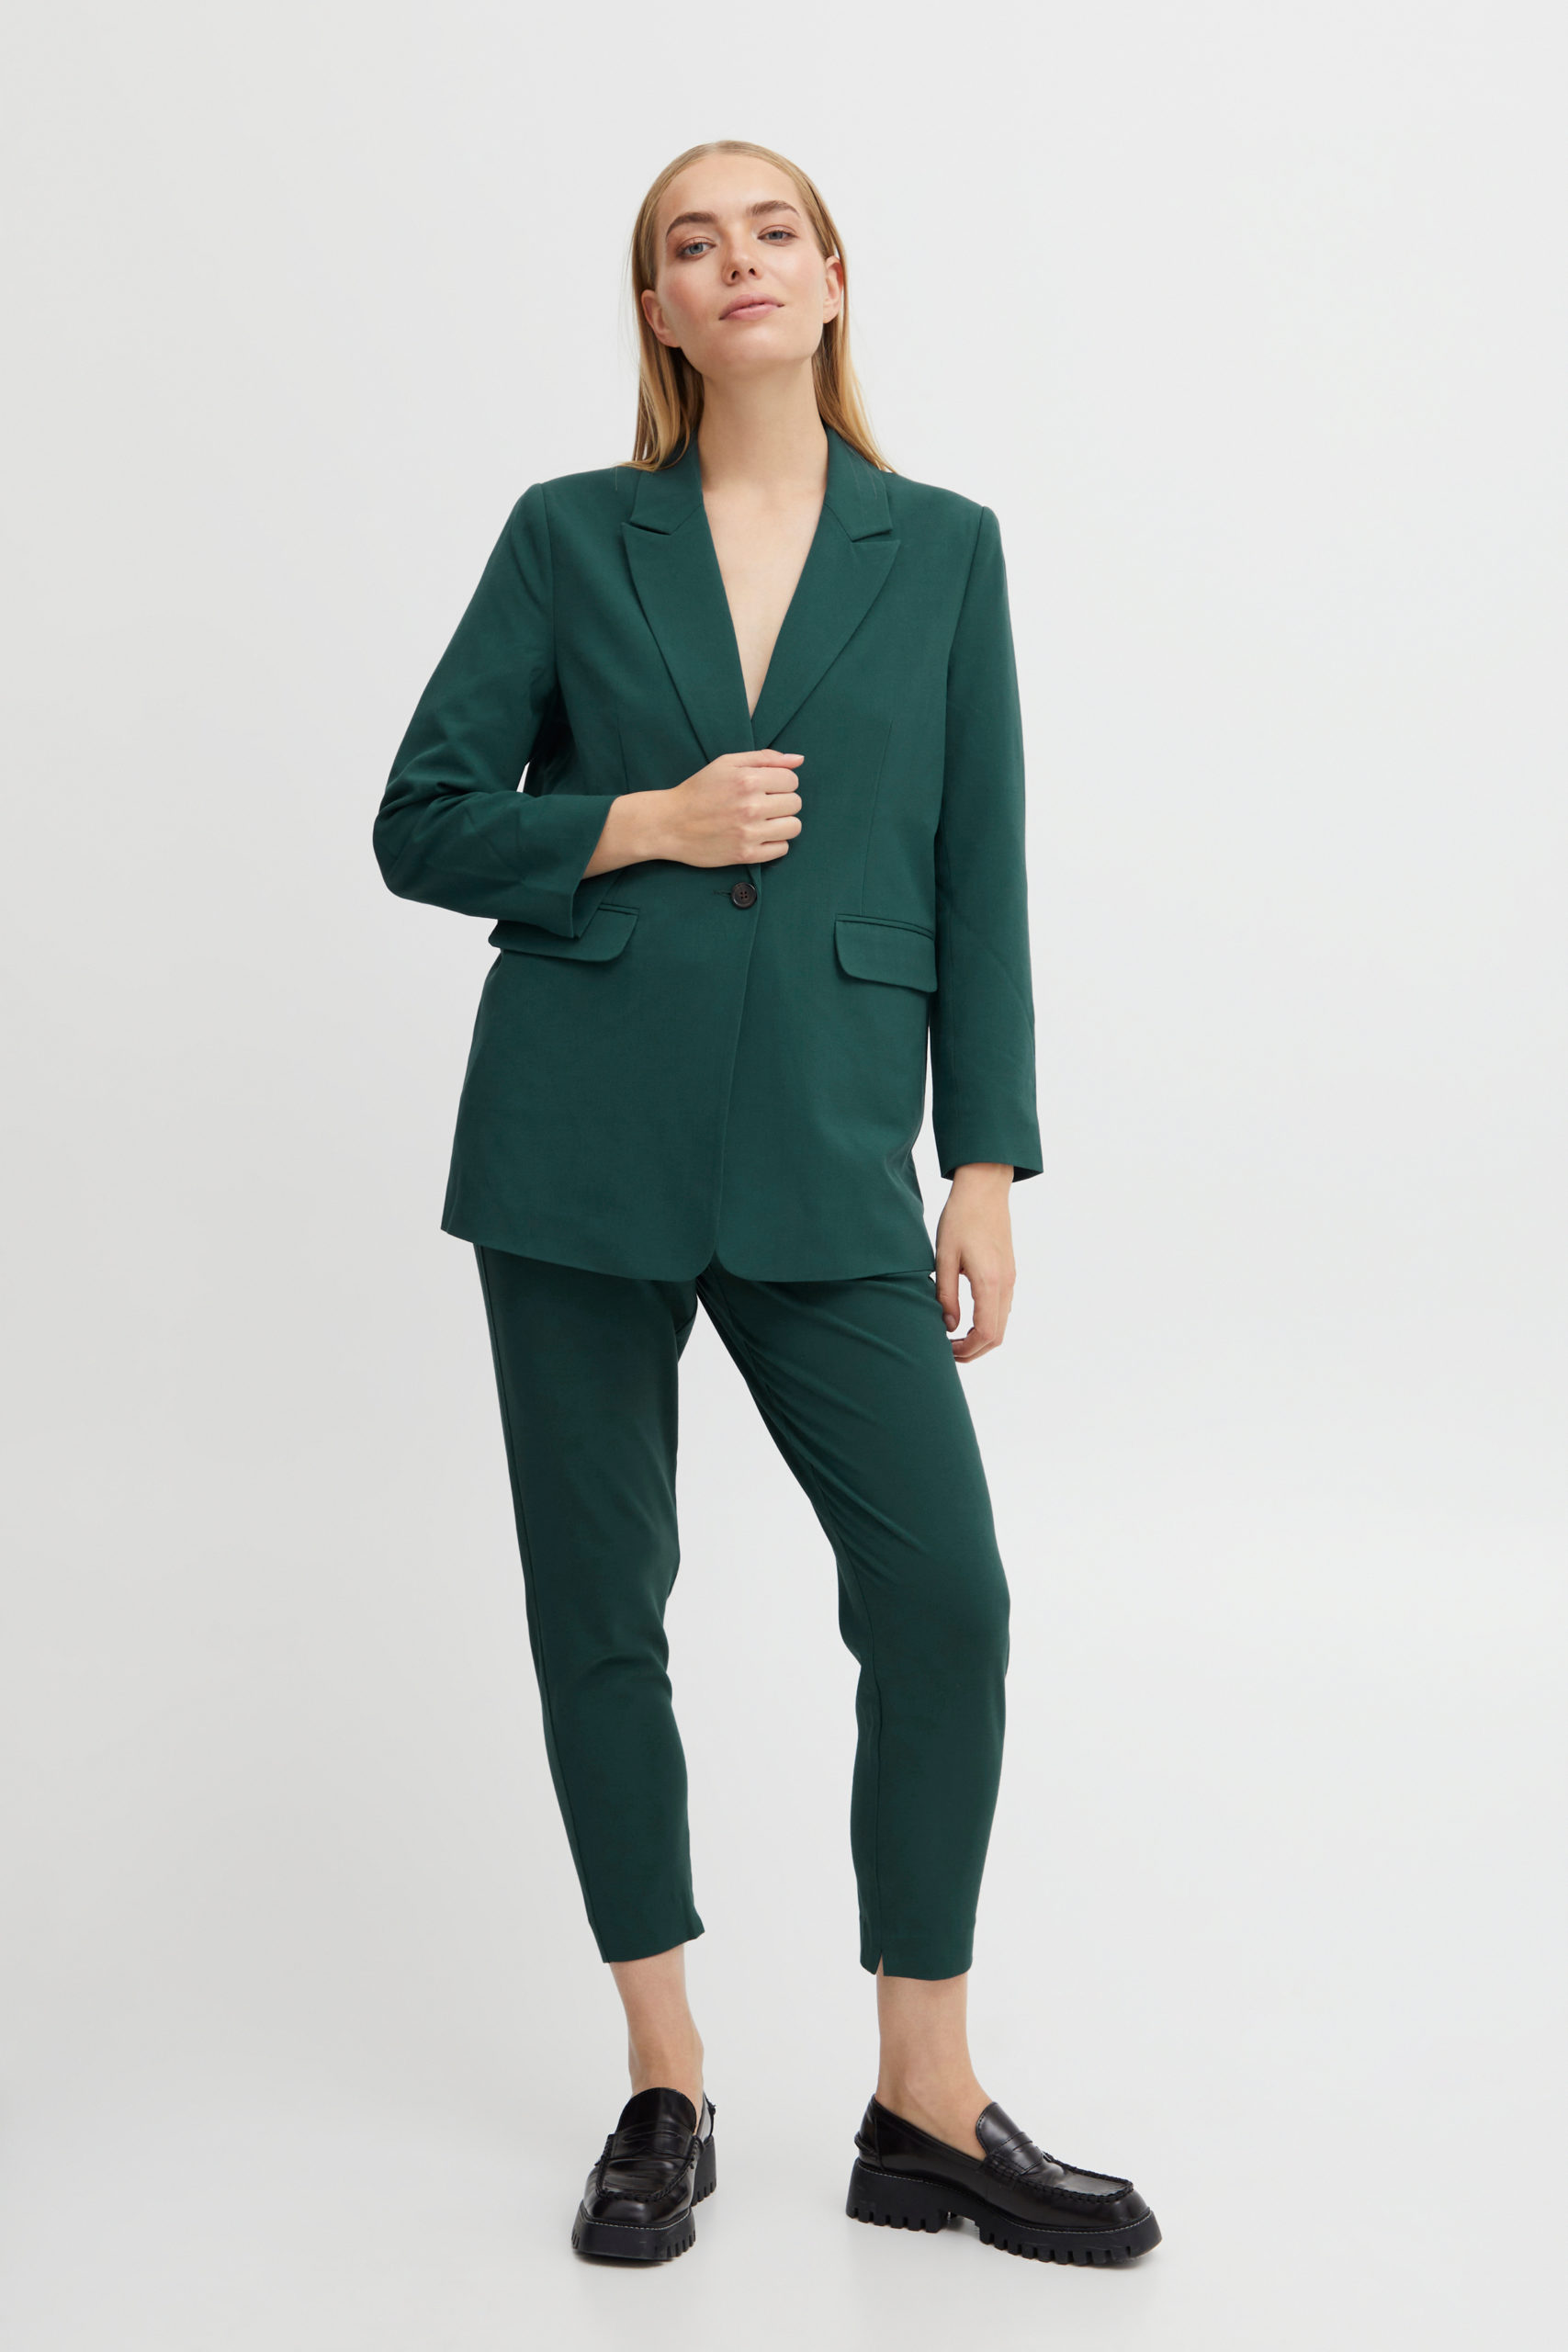 ByDanta Green Blazer suit